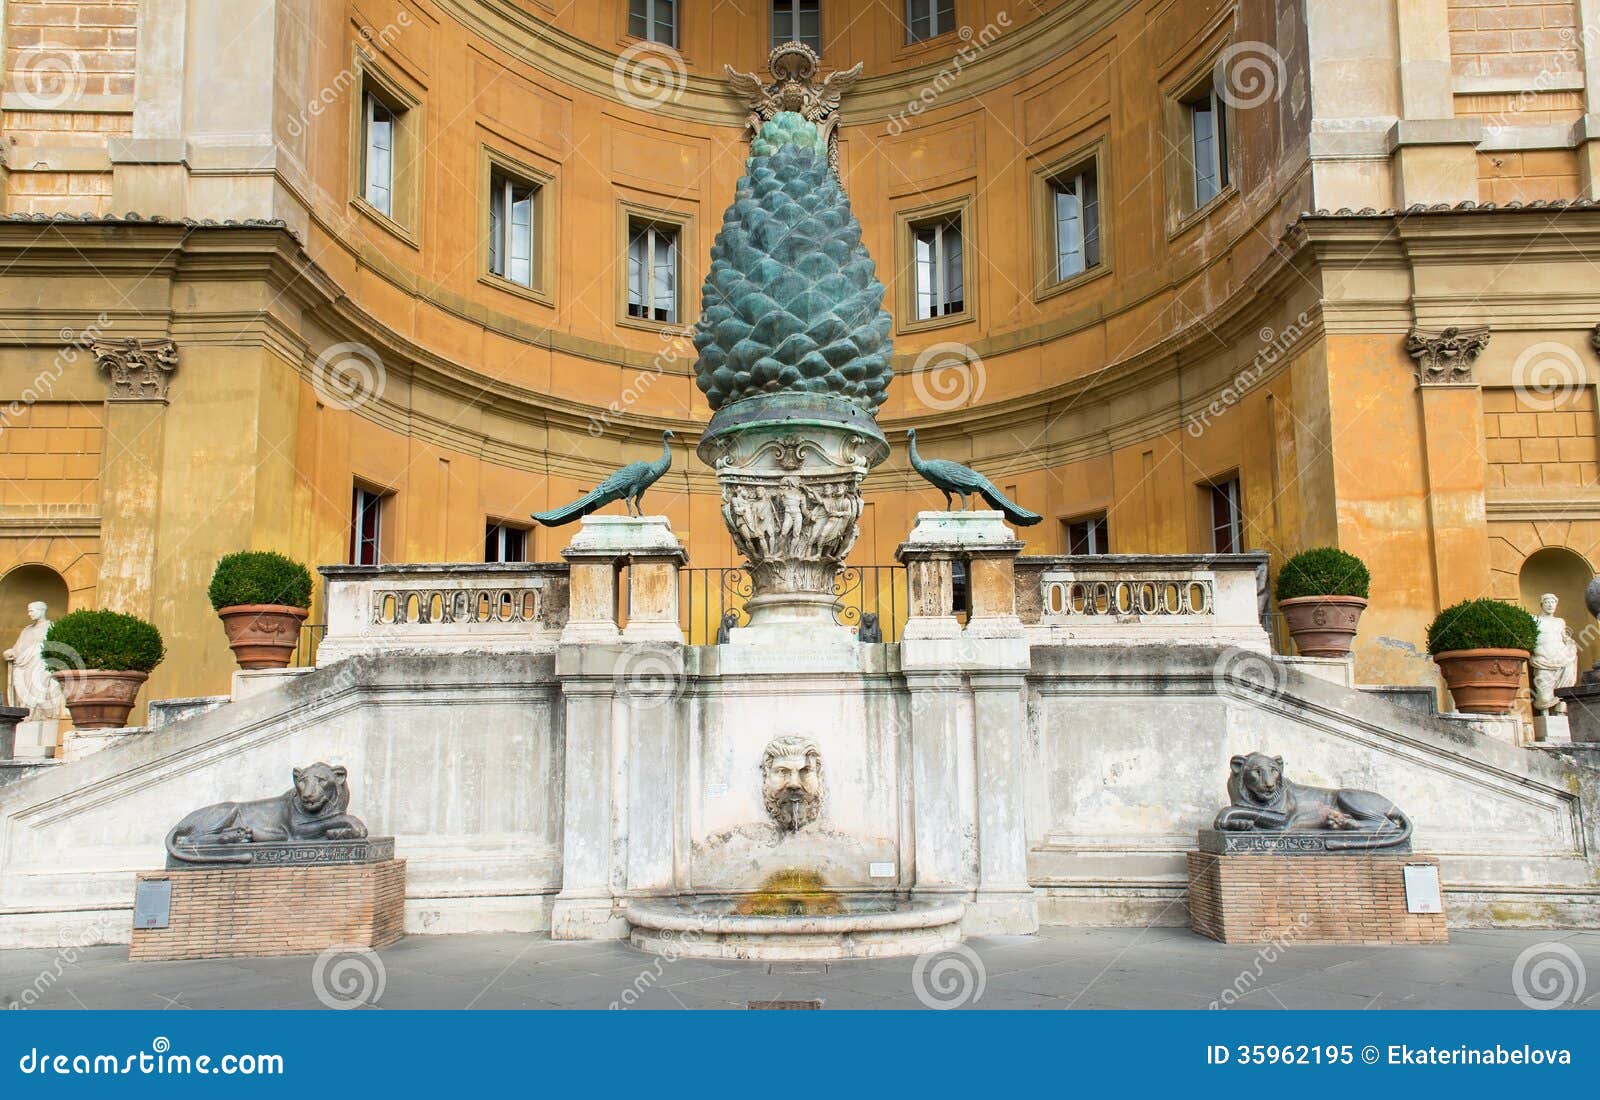 fontana-della-pigna-pine-cone-fountain-s